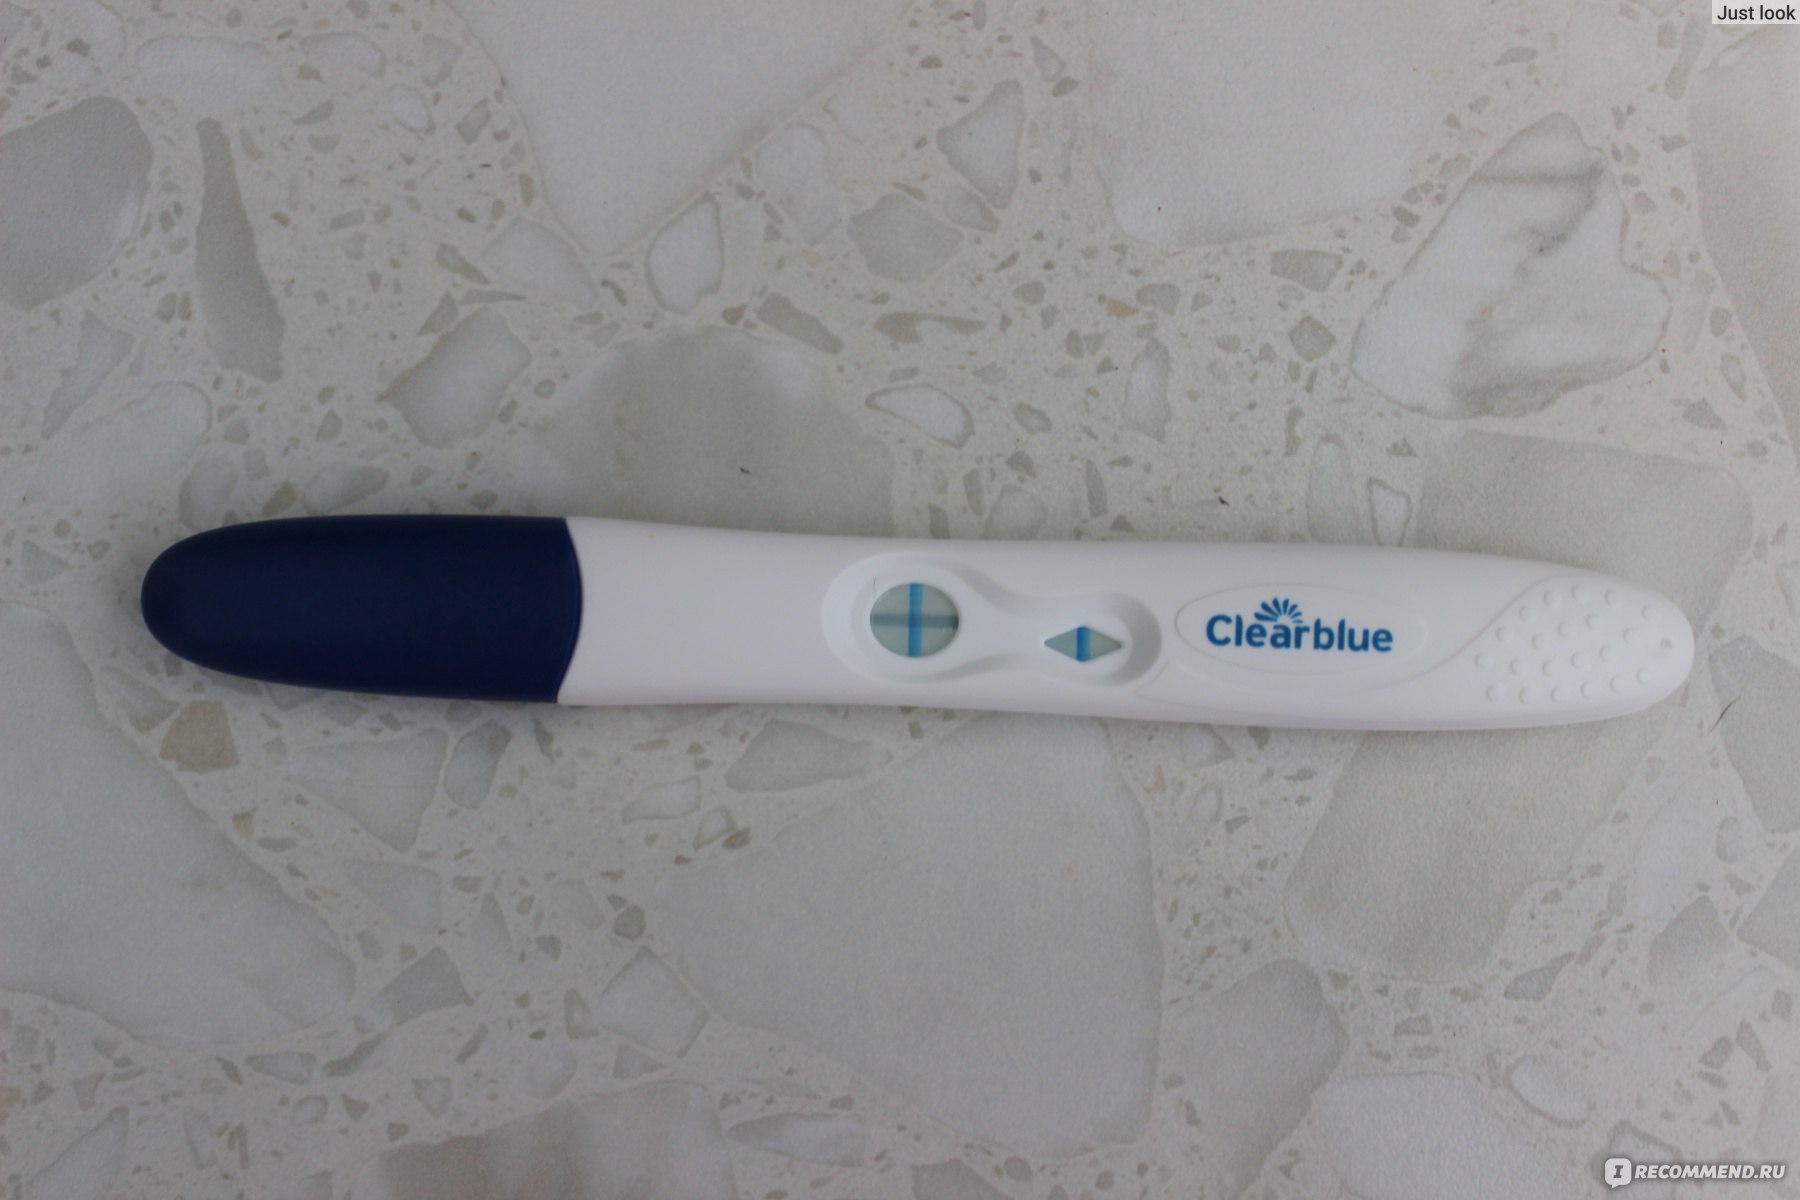 Покажу как выглядит положительный тест на беременность ClearBlue.